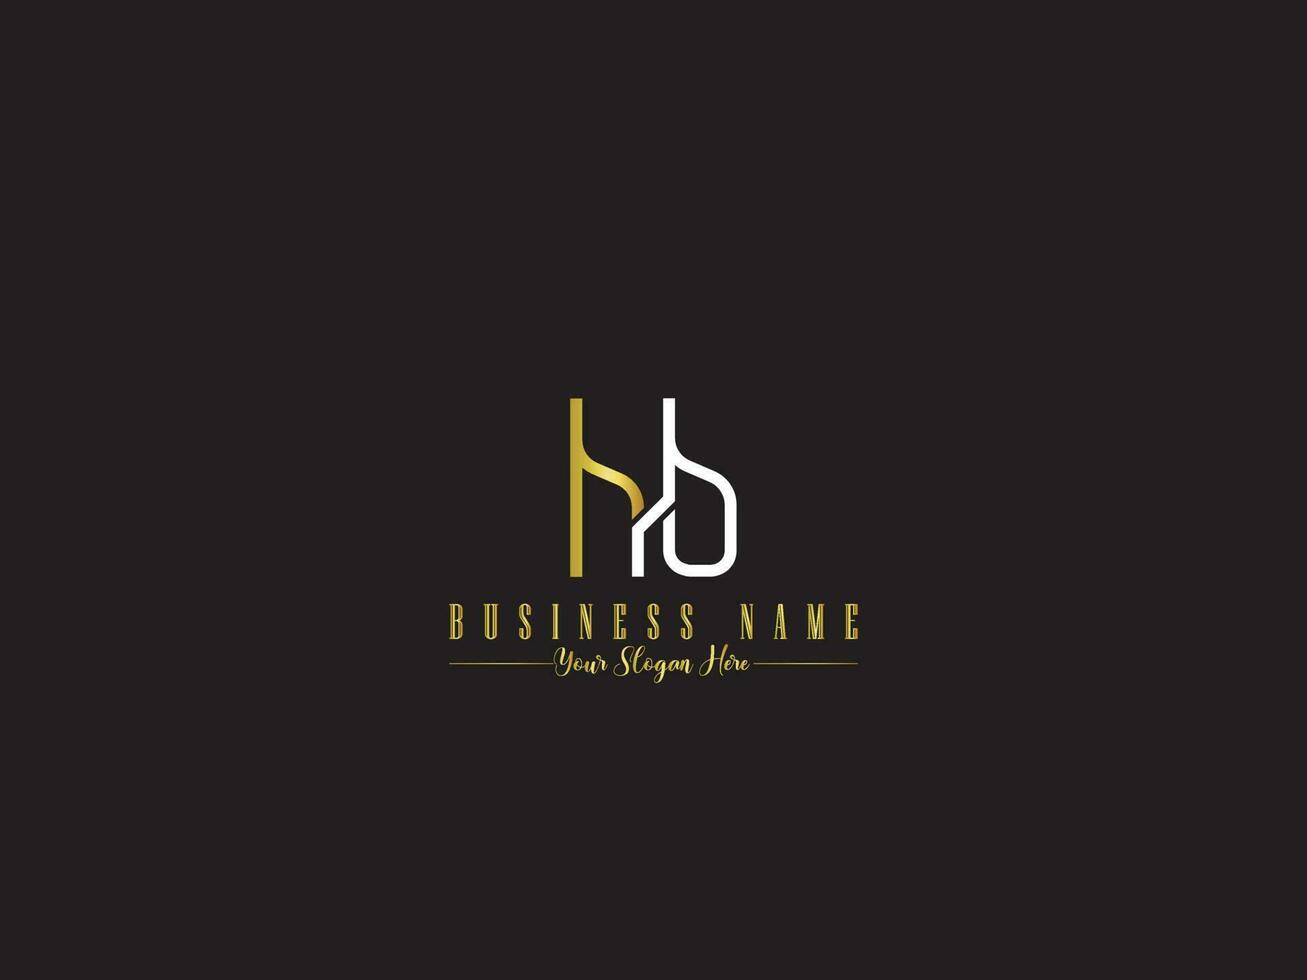 slijm hb logo icoon, minimalistische hb bh brief logo icoon vector voor winkel